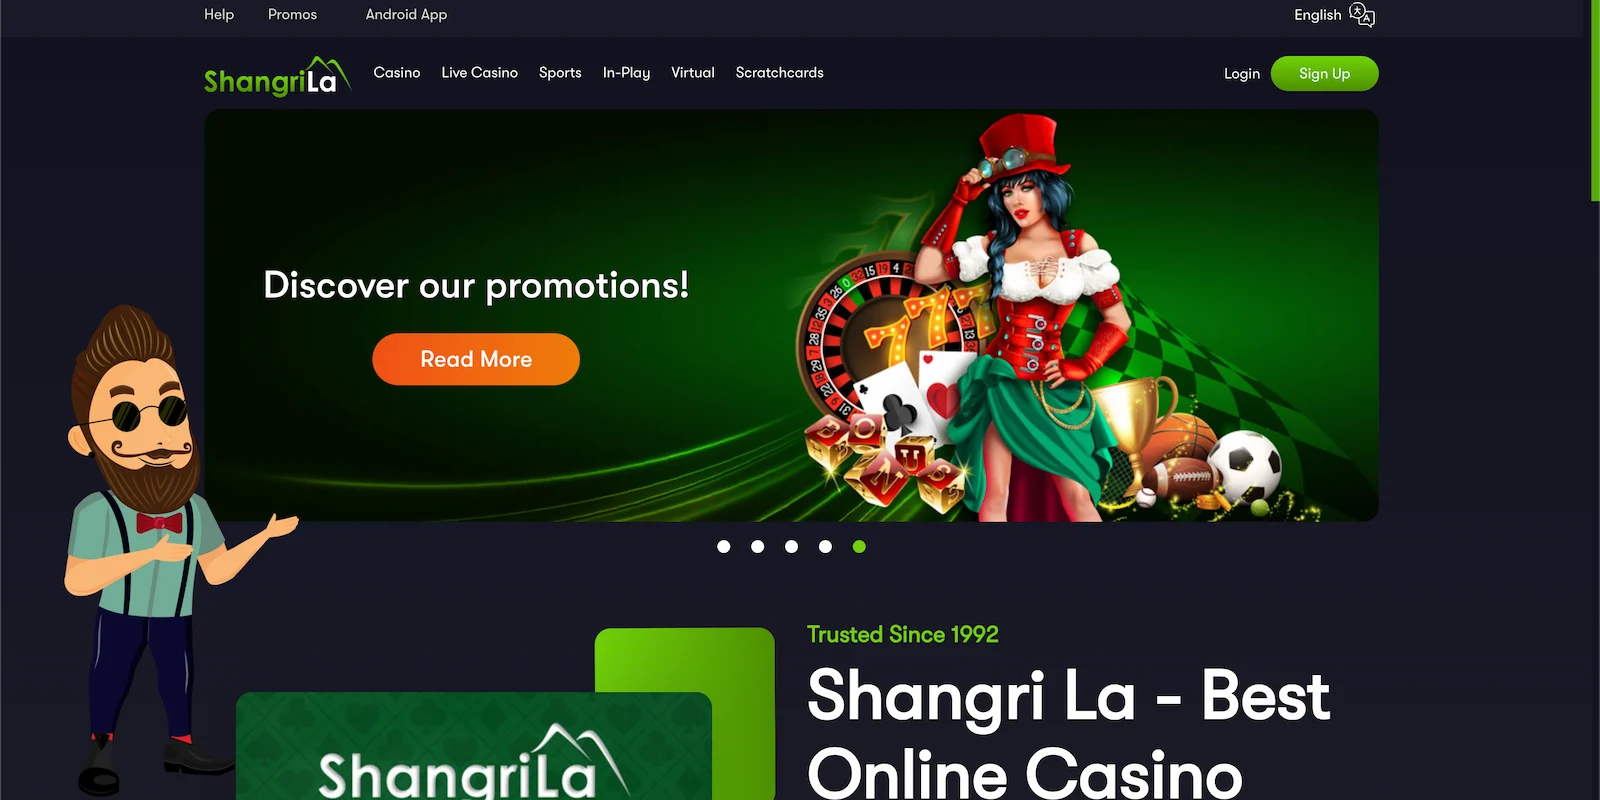 Shangri La Casino Review